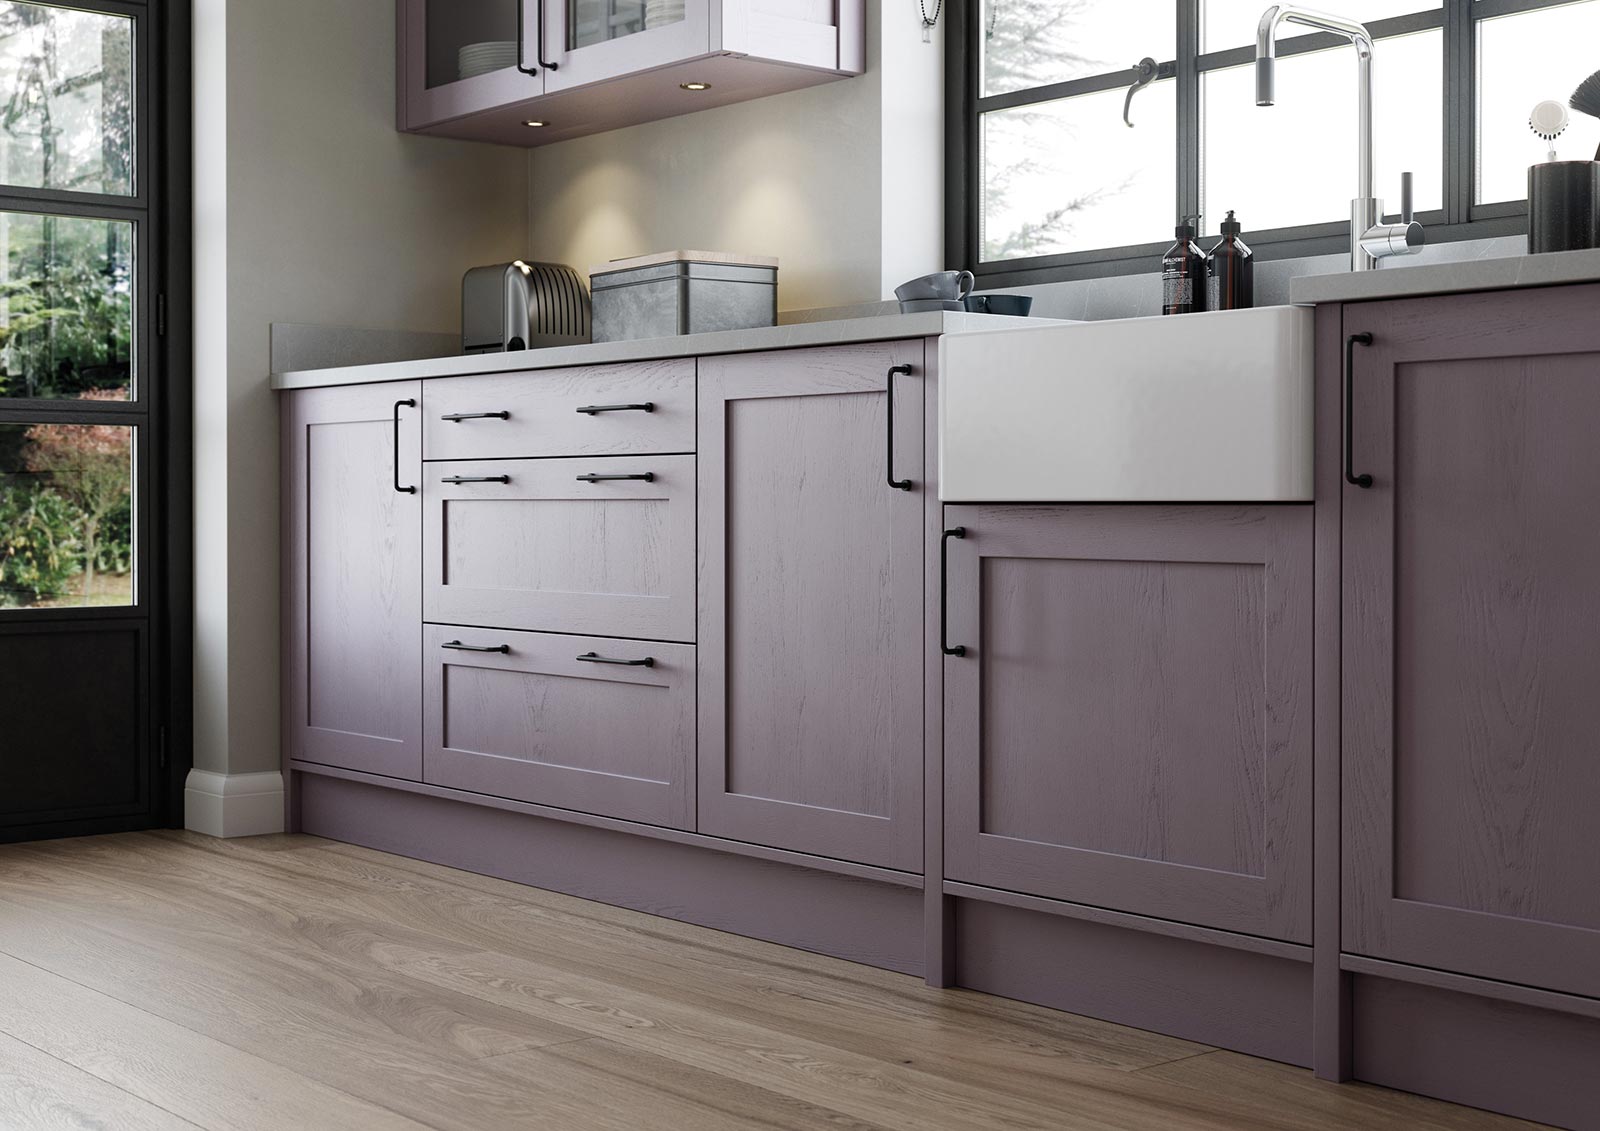 Contemporary skinny shaker door kitchen painted deep heather lavendar grey belfast sink view